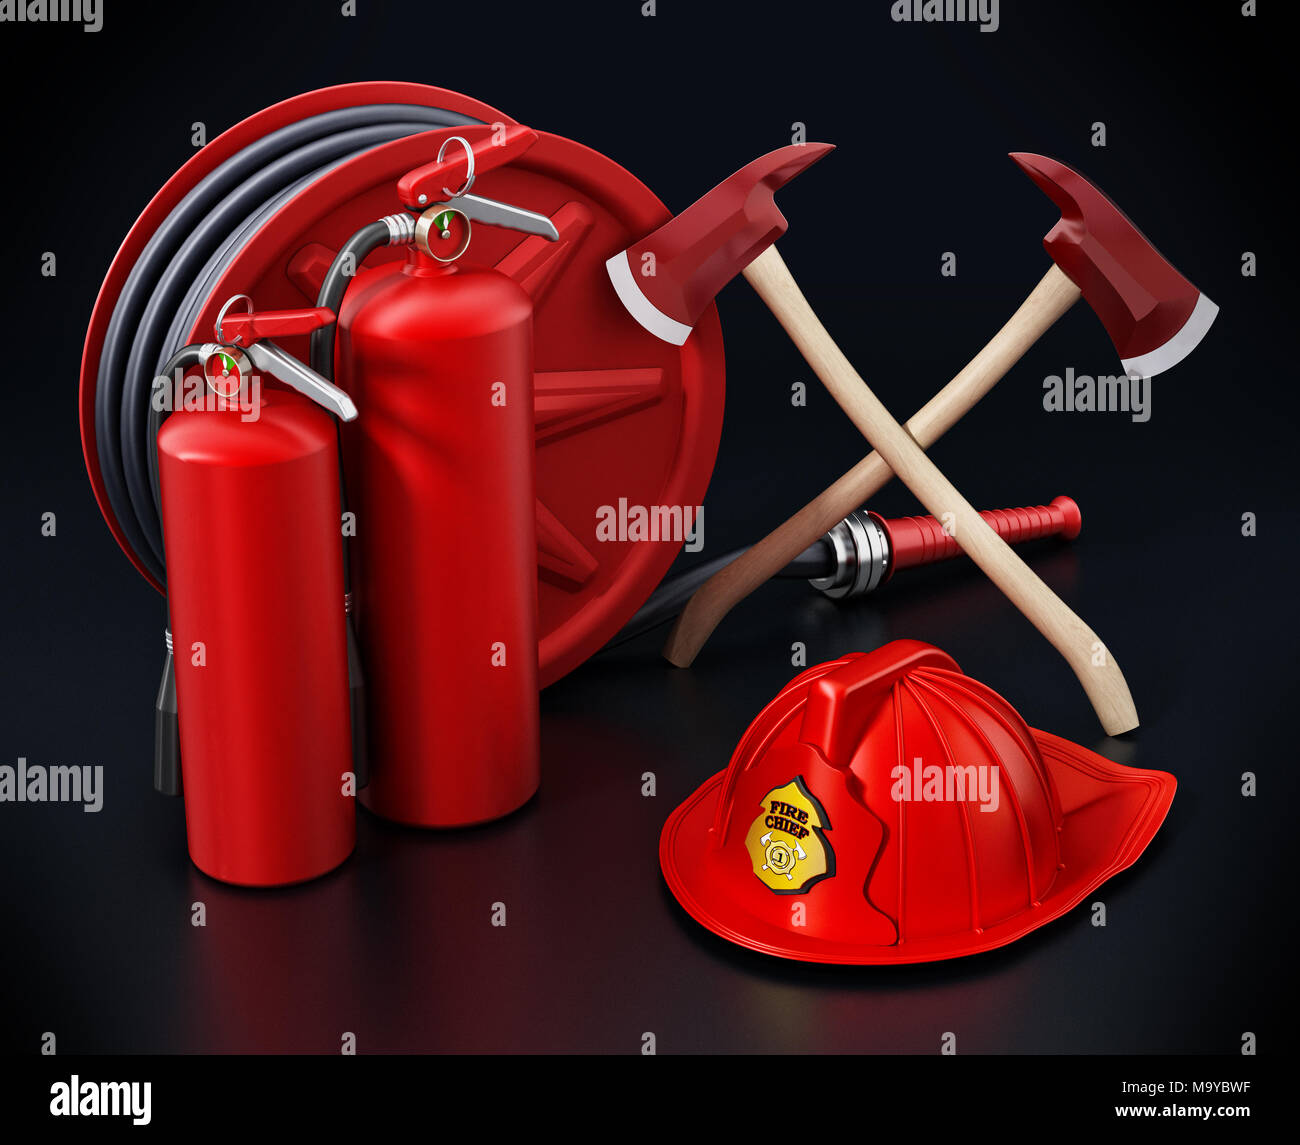 Fireman hat, hose, extinguishers isolated on black background 3D illustration Stock Photo